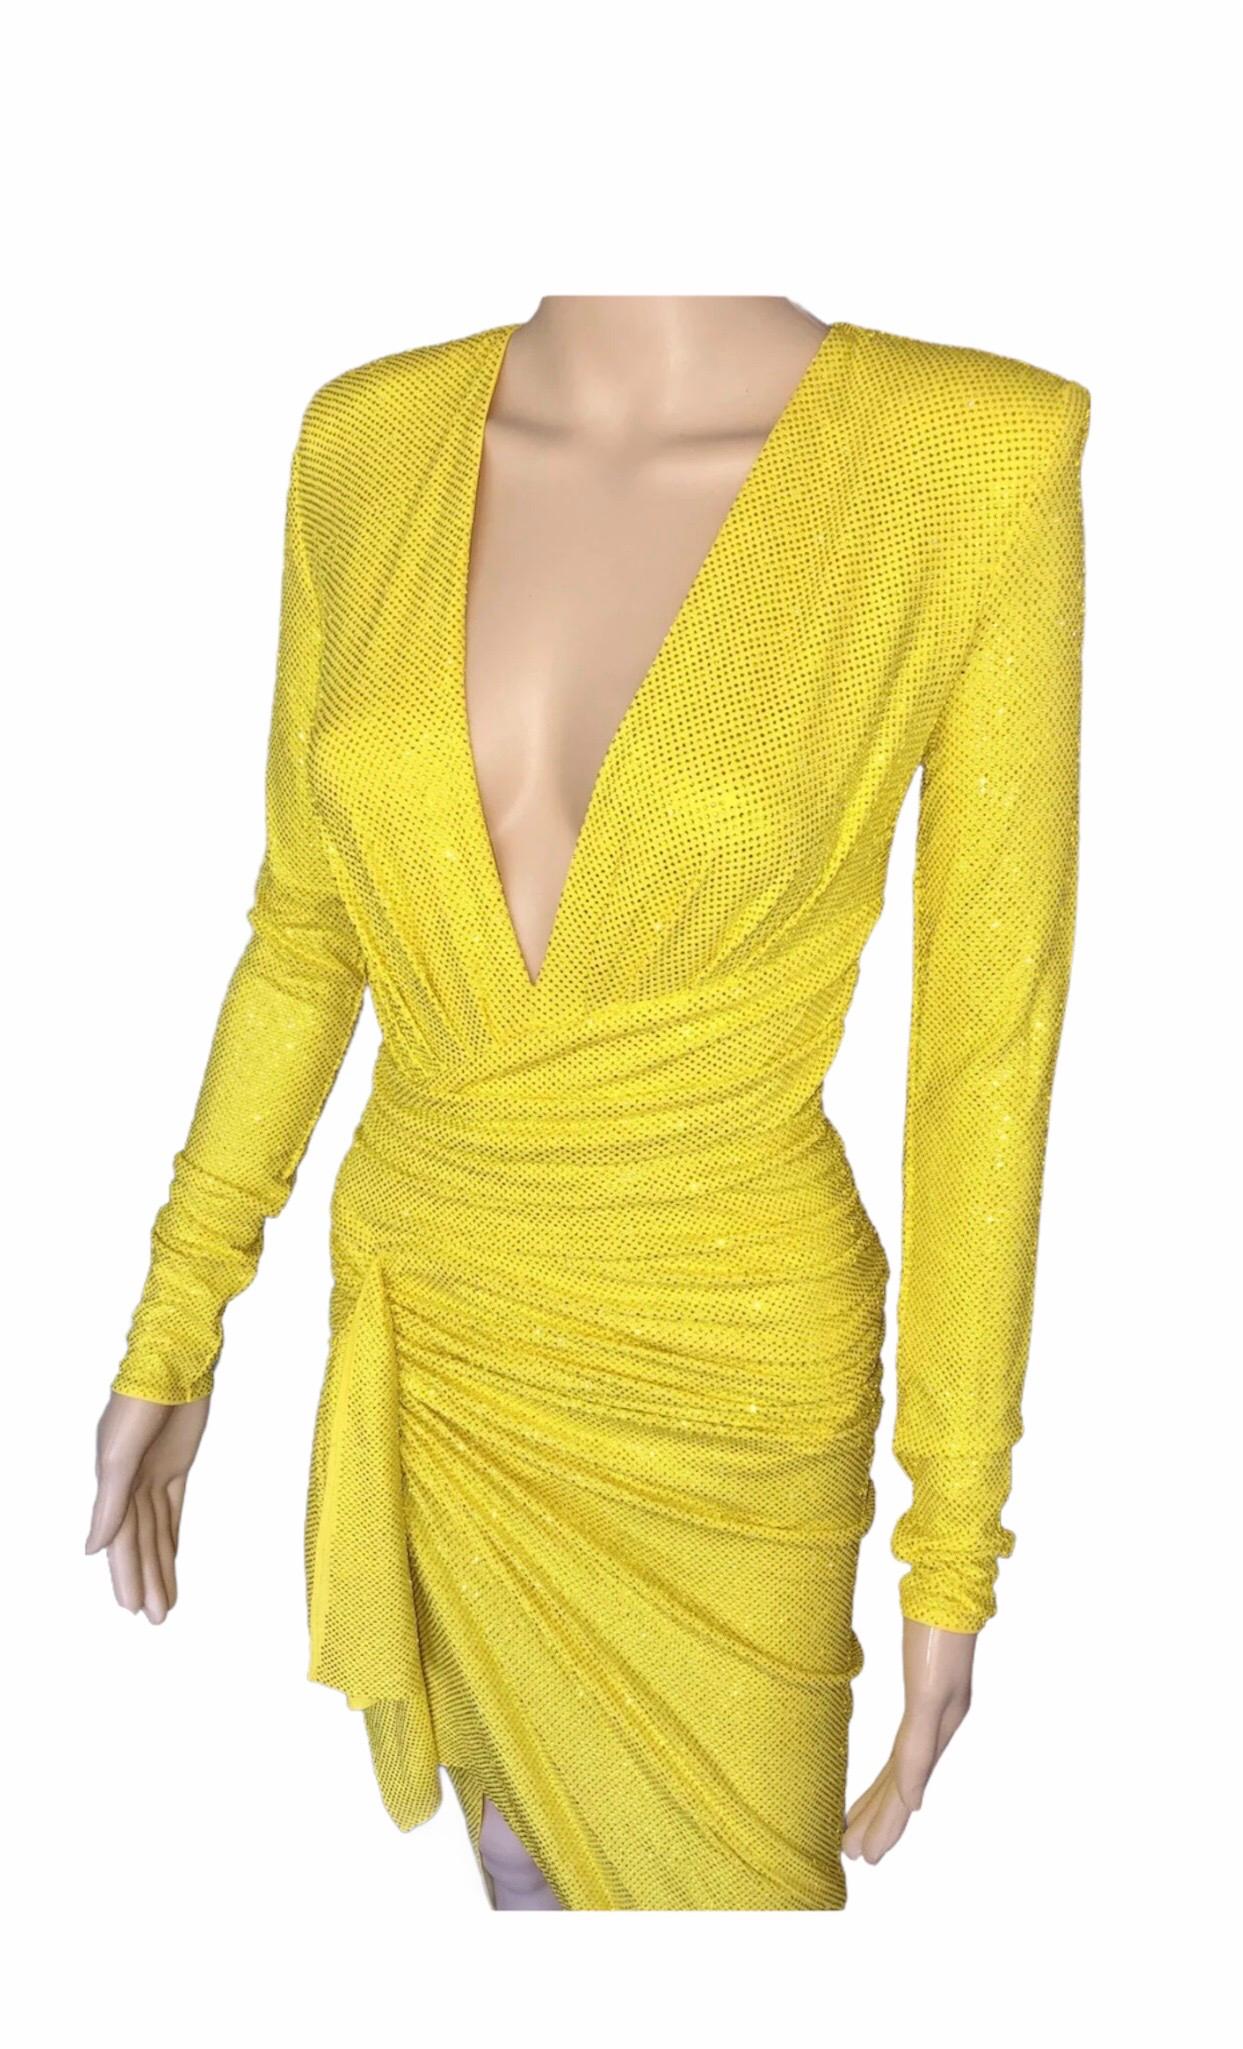 alexandre vauthier yellow dress